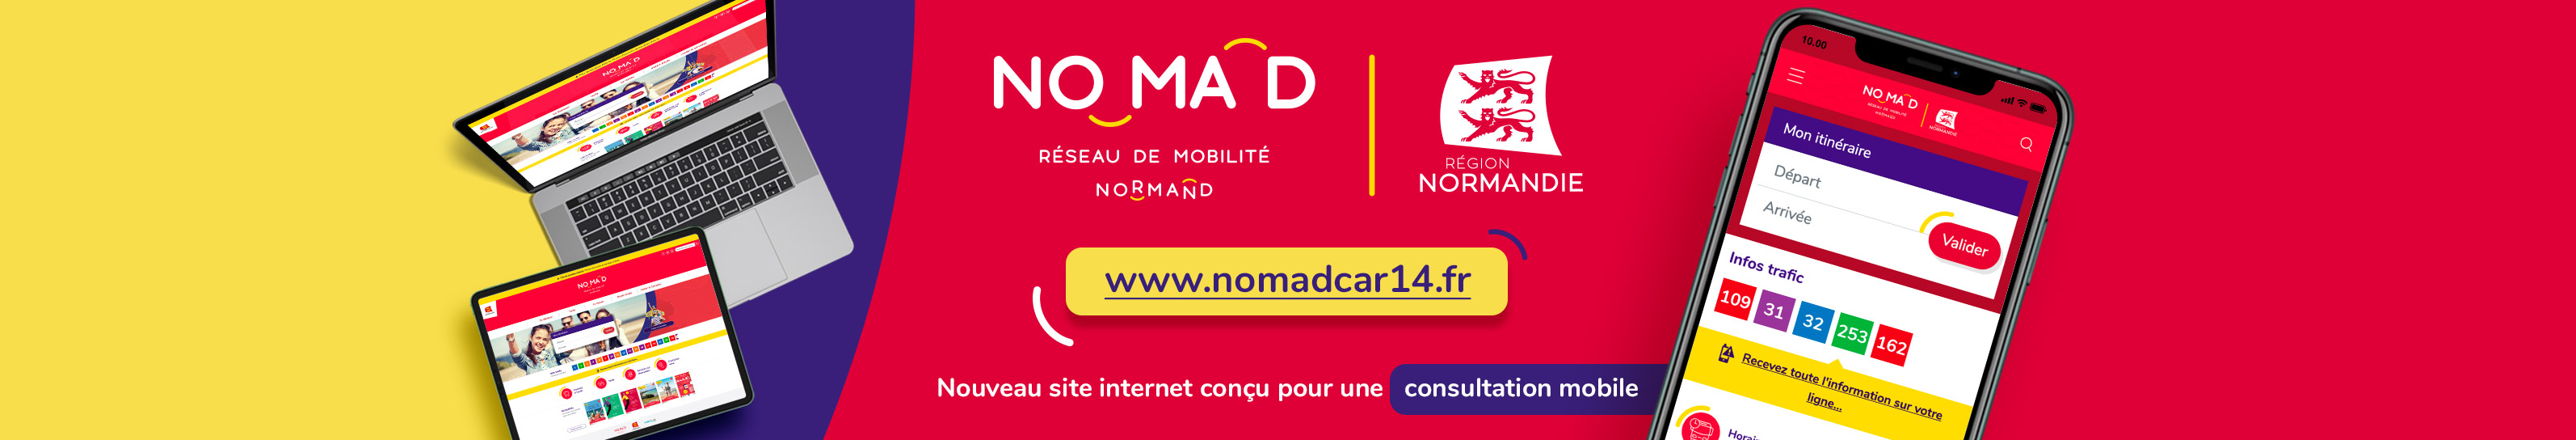 Nouveau site NomadCar14 